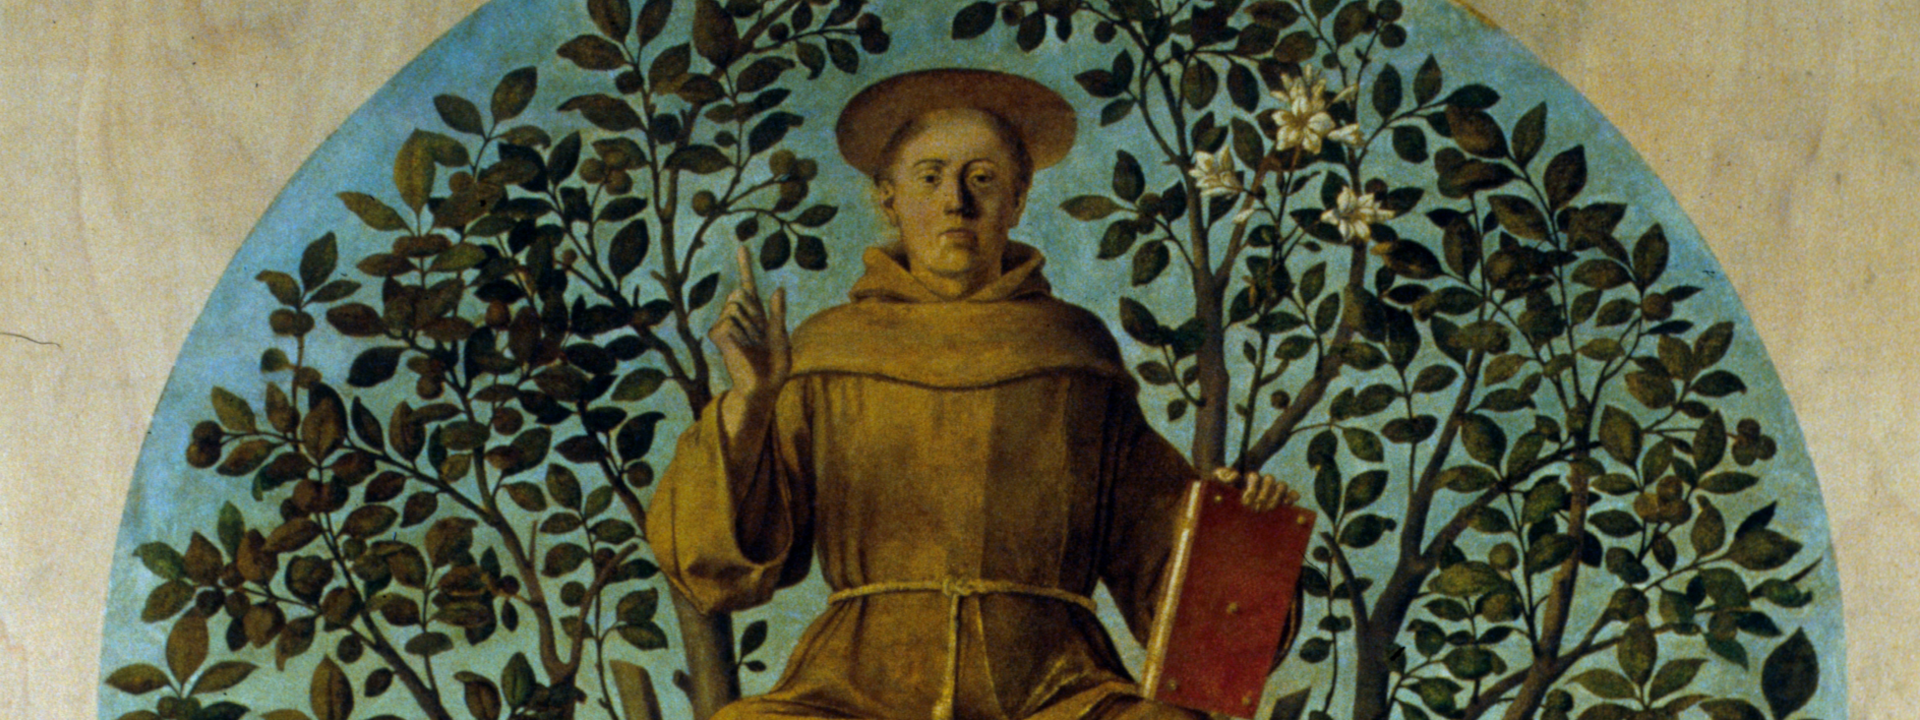 Sant' Antonio da Padova sul noce tra San Bonaventura e il Beato Luca Belludi